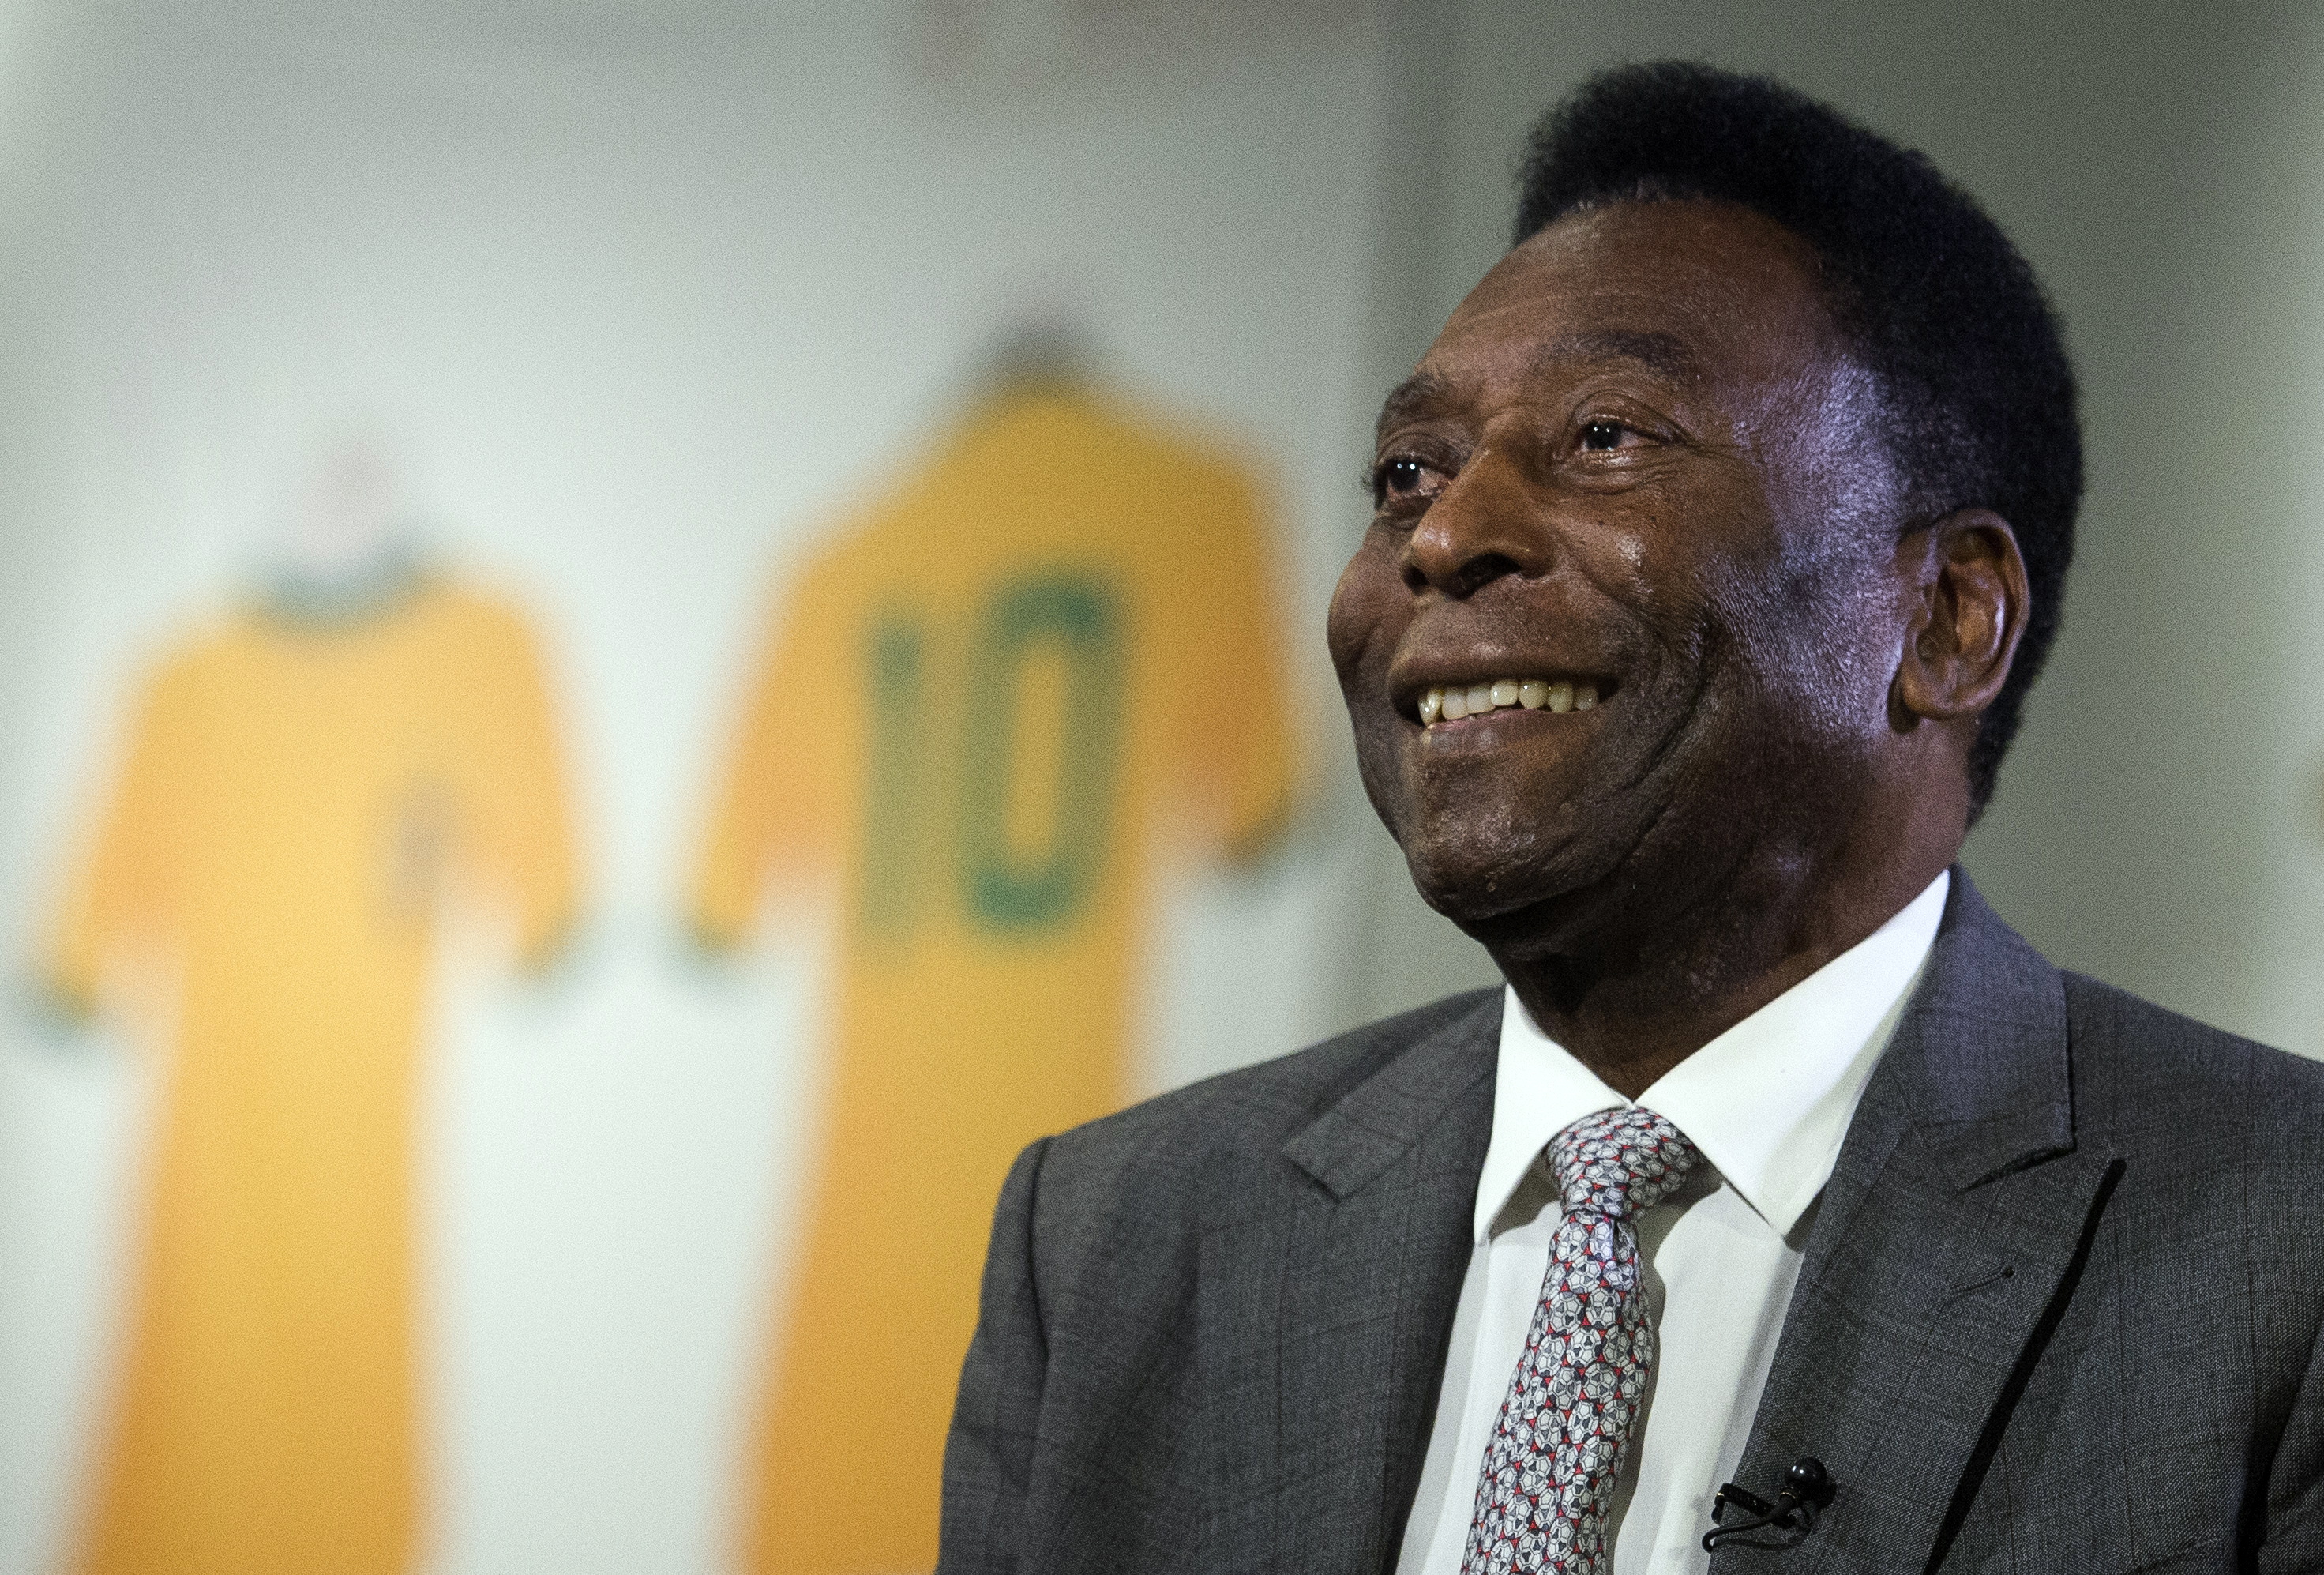 Pelé falleció luego de una lucha contra el cáncer de colón que le invadió en 2021. (Foto Prensa Libre: EFE)